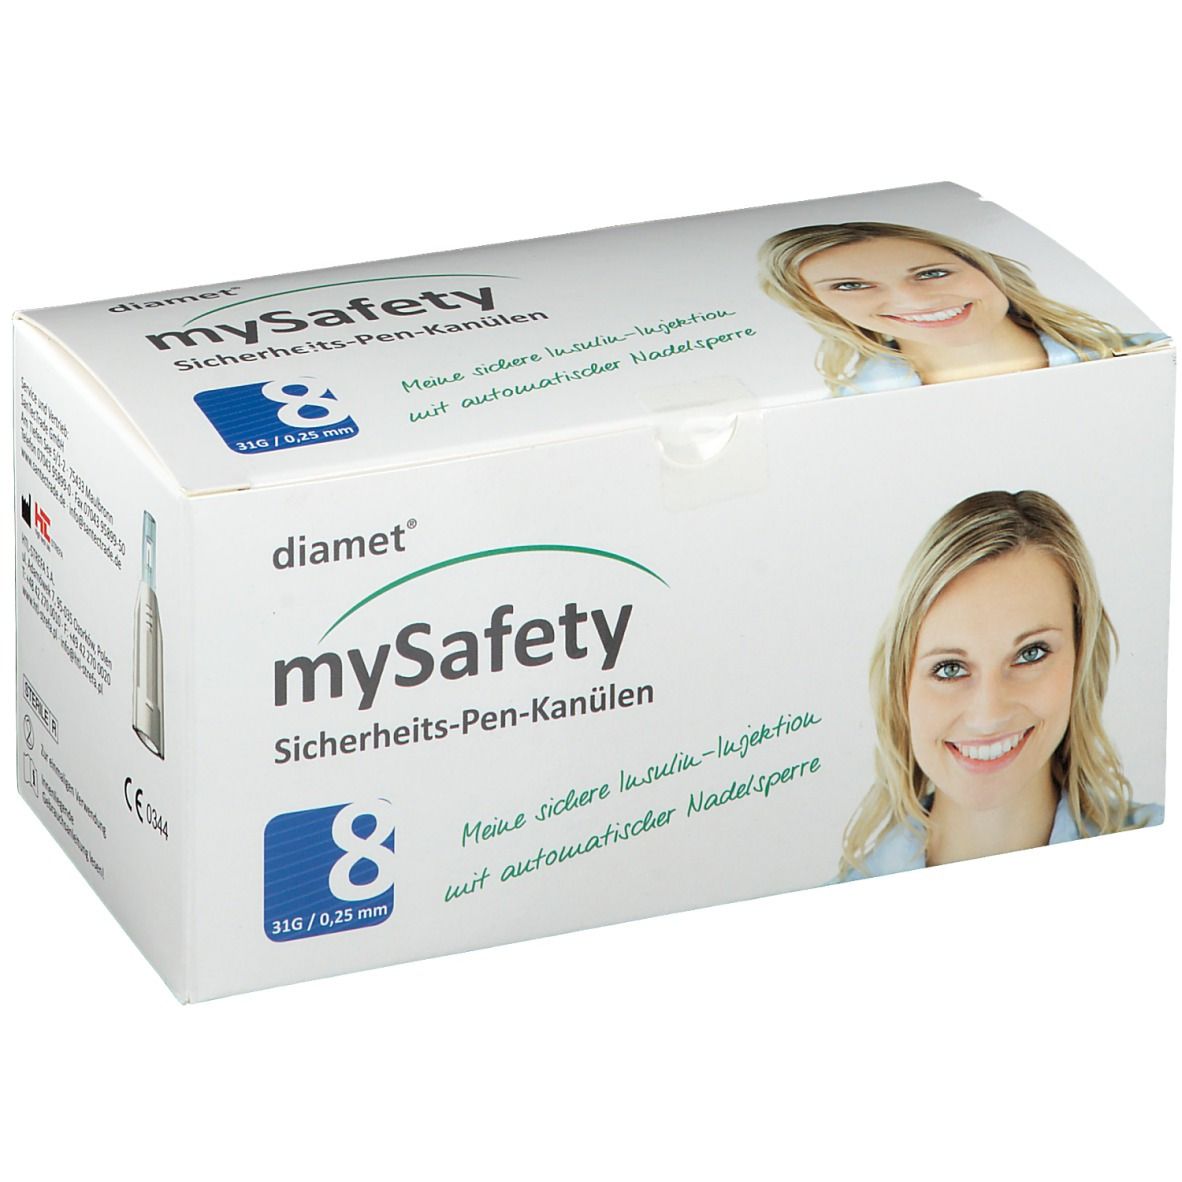 diamet® mySafety Sicherheits-Pen-Kanüle 31 G 0,25 mm x 8 mm